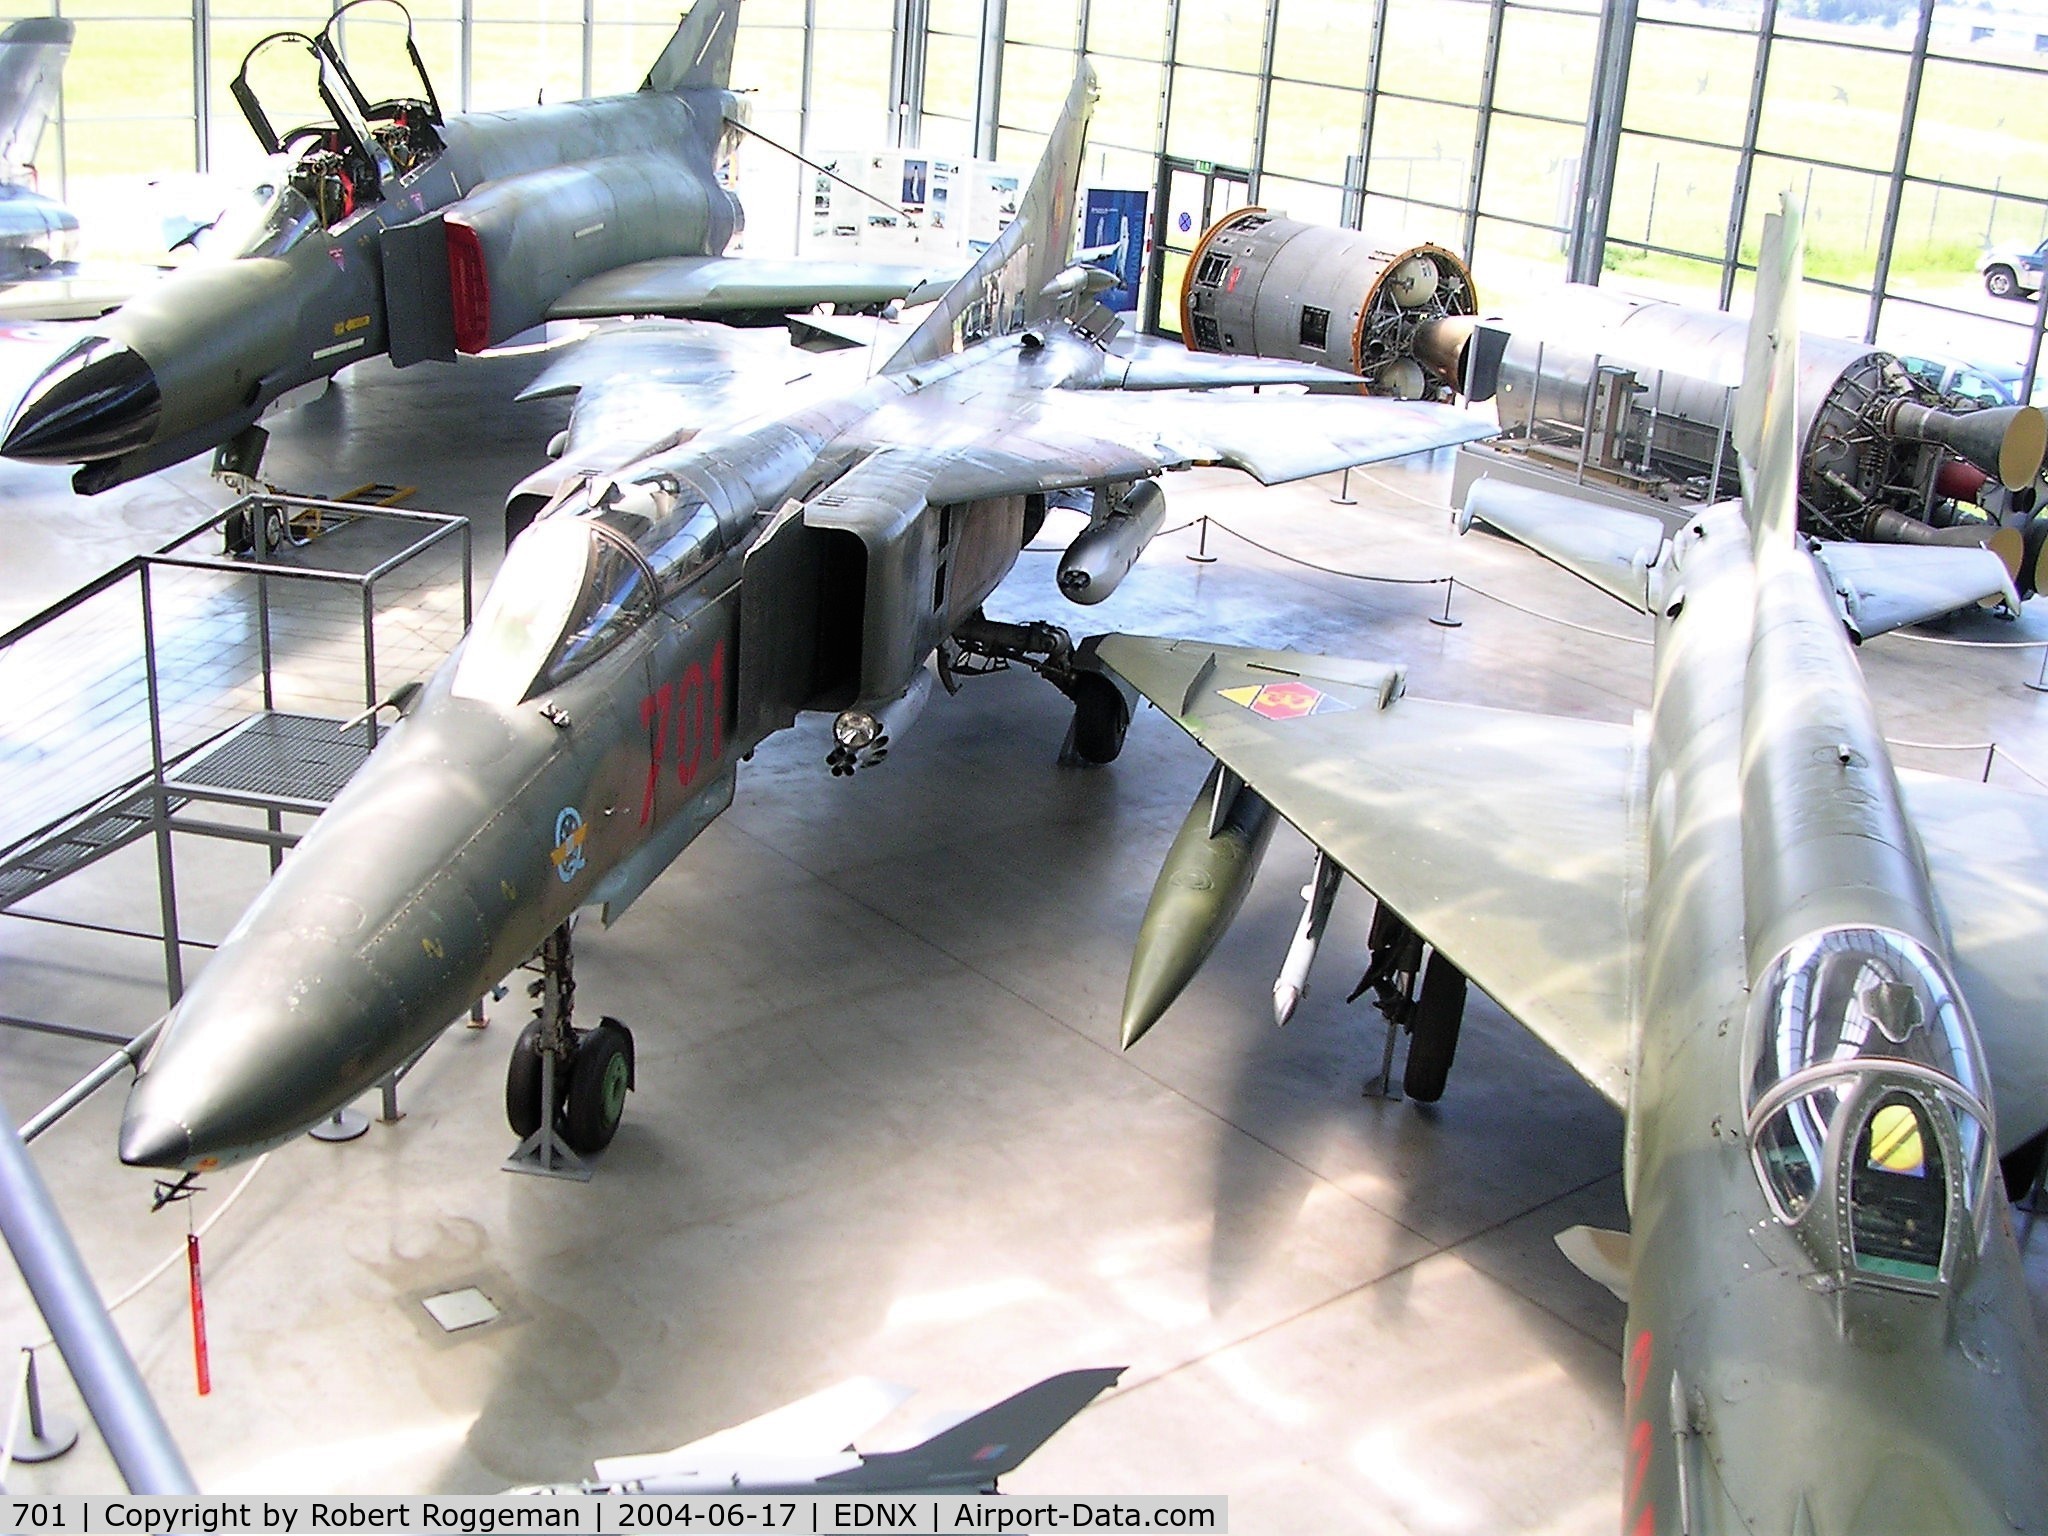 701, 1980 Mikoyan-Gurevich MiG-23BN C/N 0393214217, OBERSCHLEISSHEIM DEUTSCHES MUSEUM.